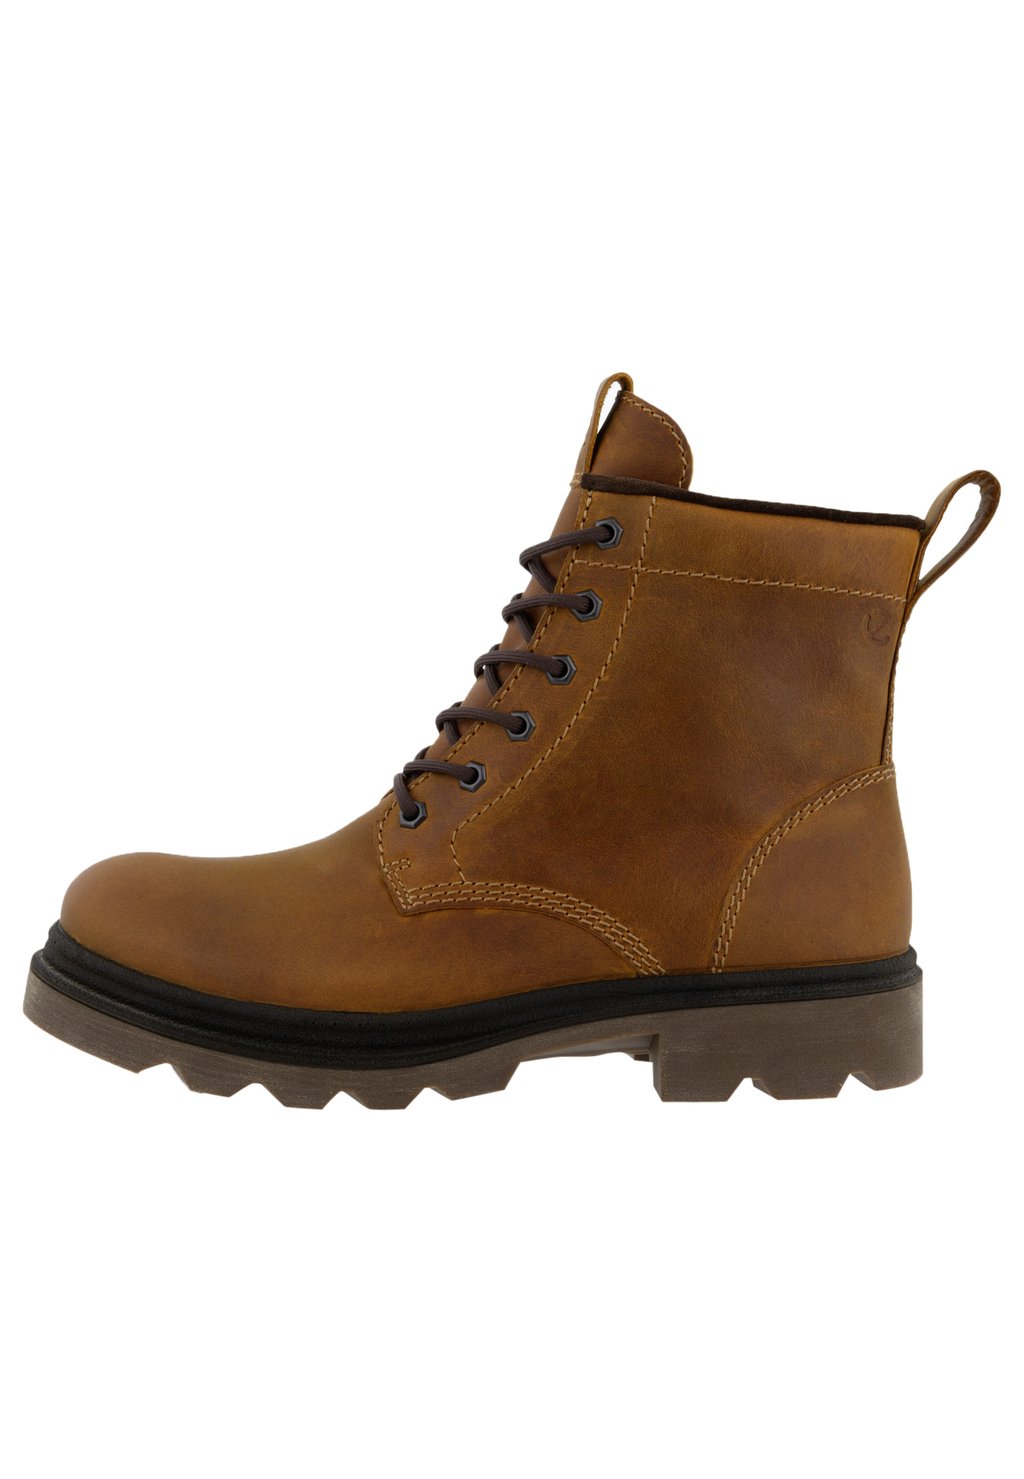 Зимние ботинки Grainer ECCO, коричневый ботильоны на шнуровке ecco grainer коричневый